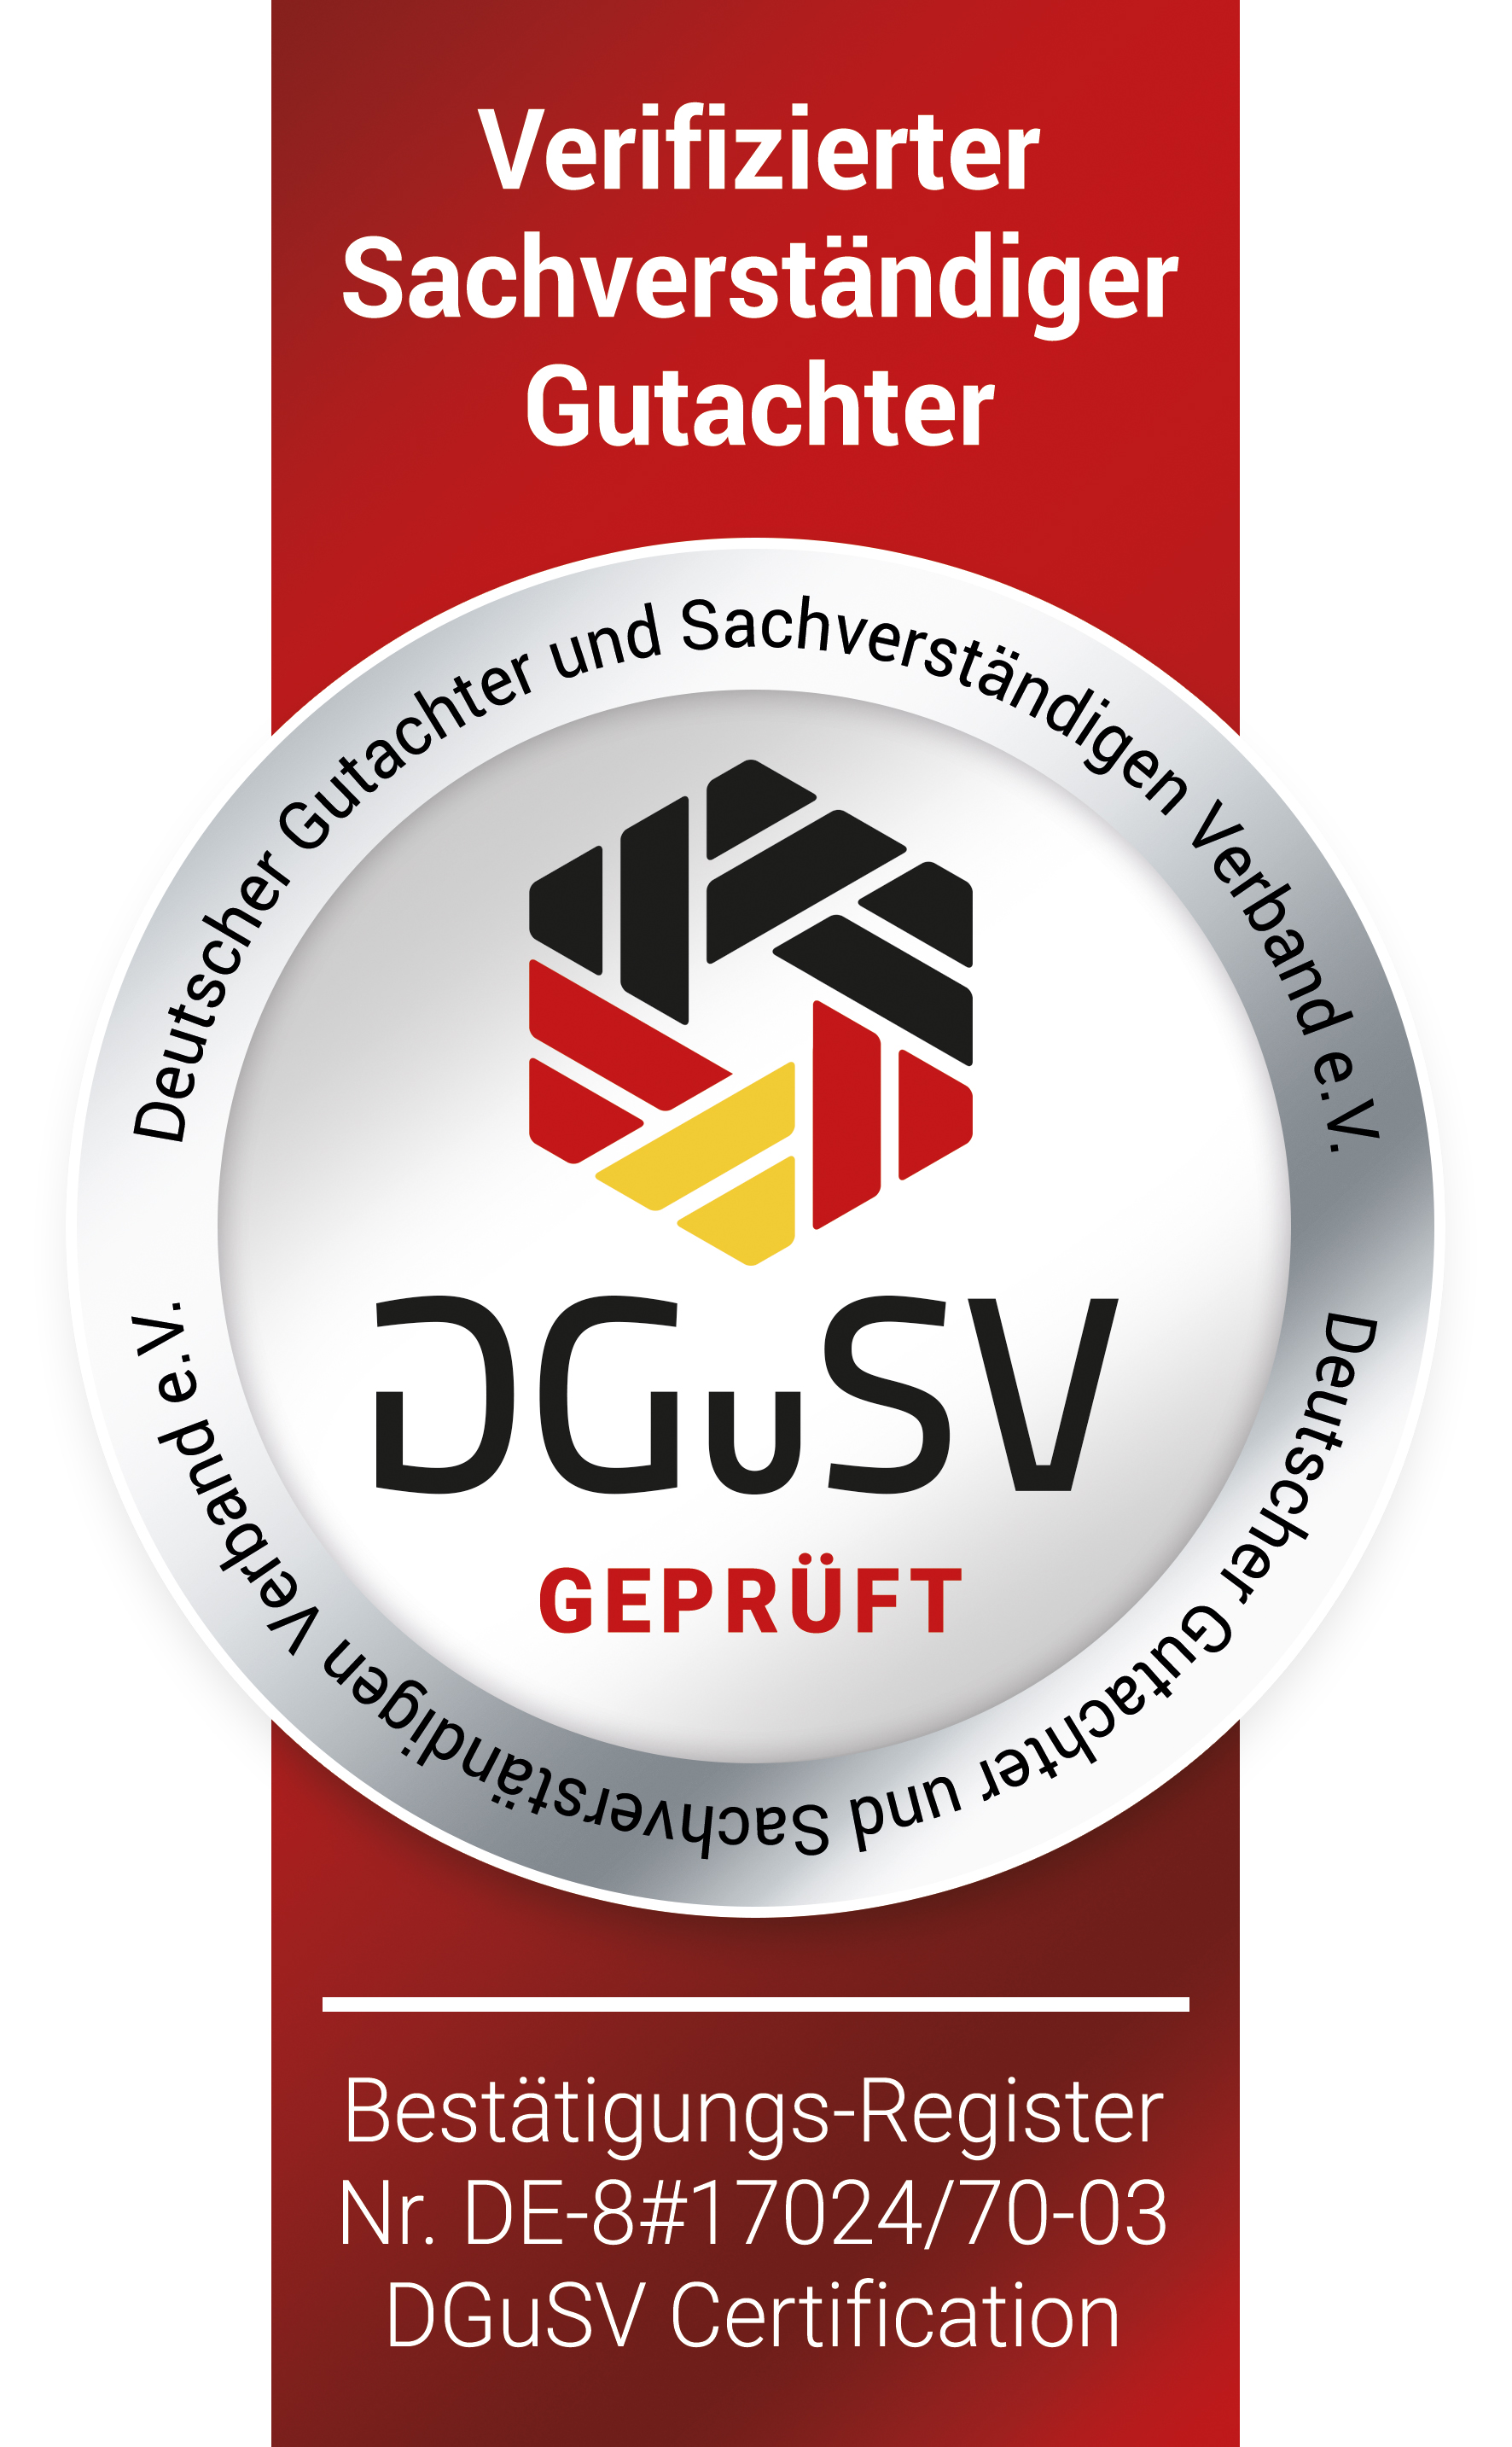 DGuSV geprüfte und zertifizierte Sachverständige